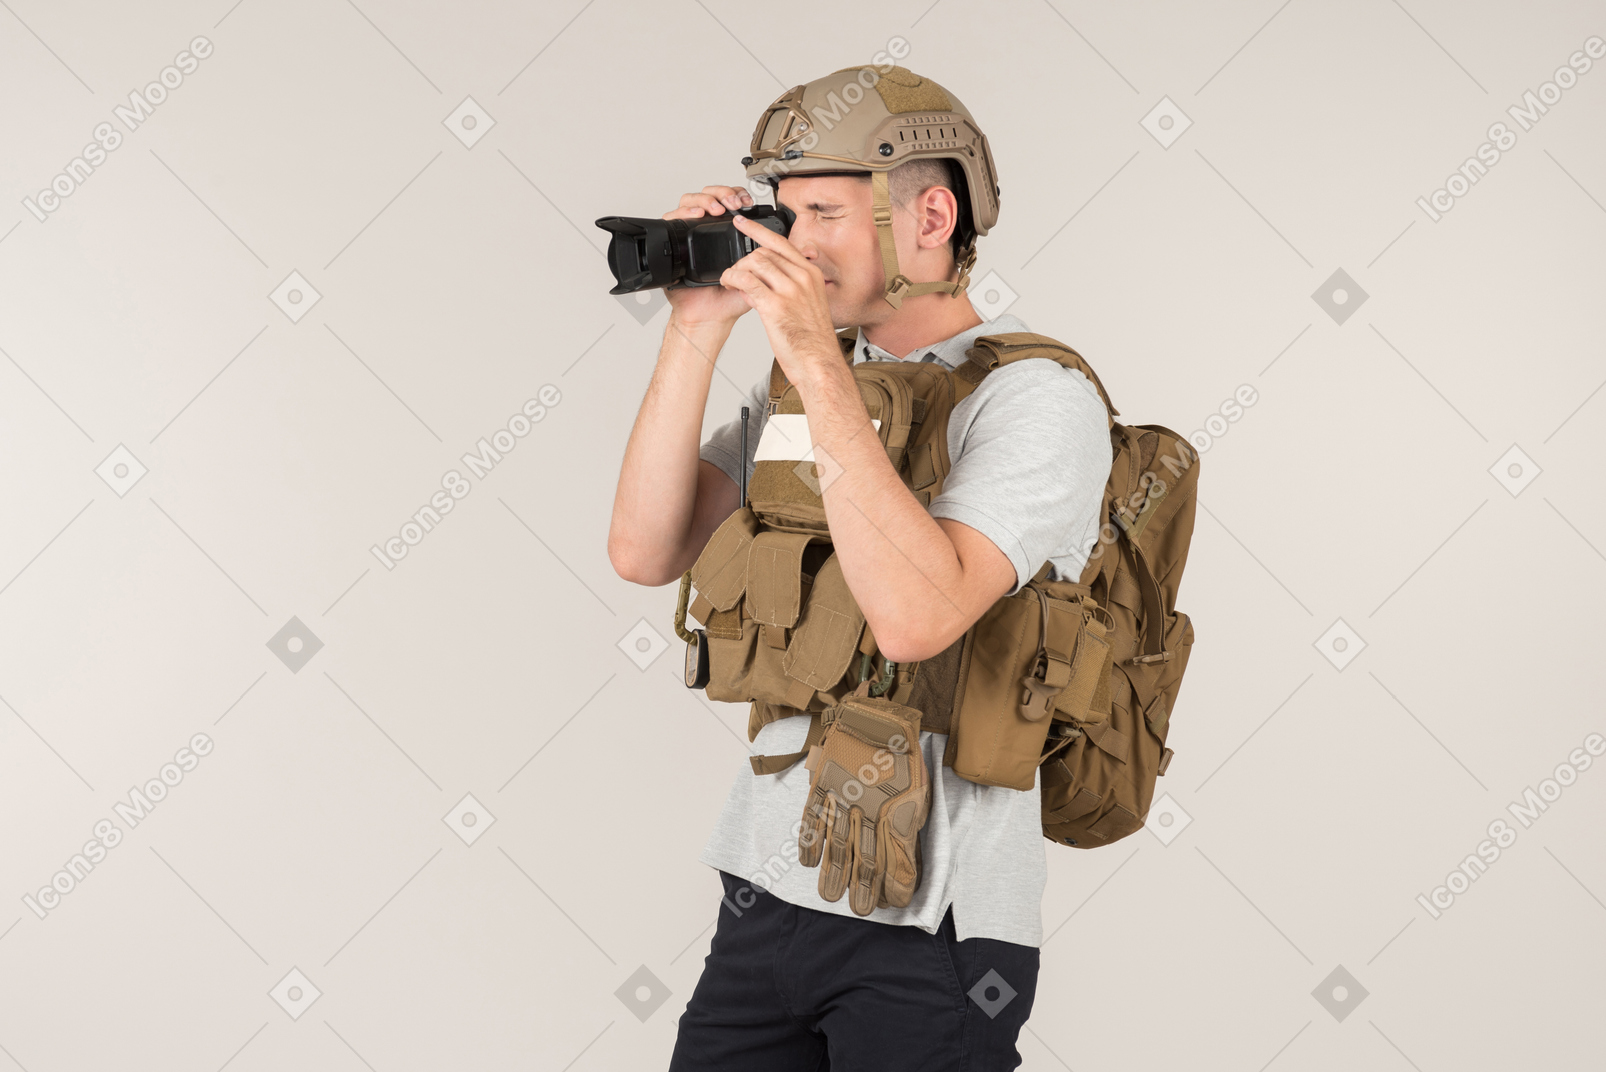 Male hot zone reporter using camera